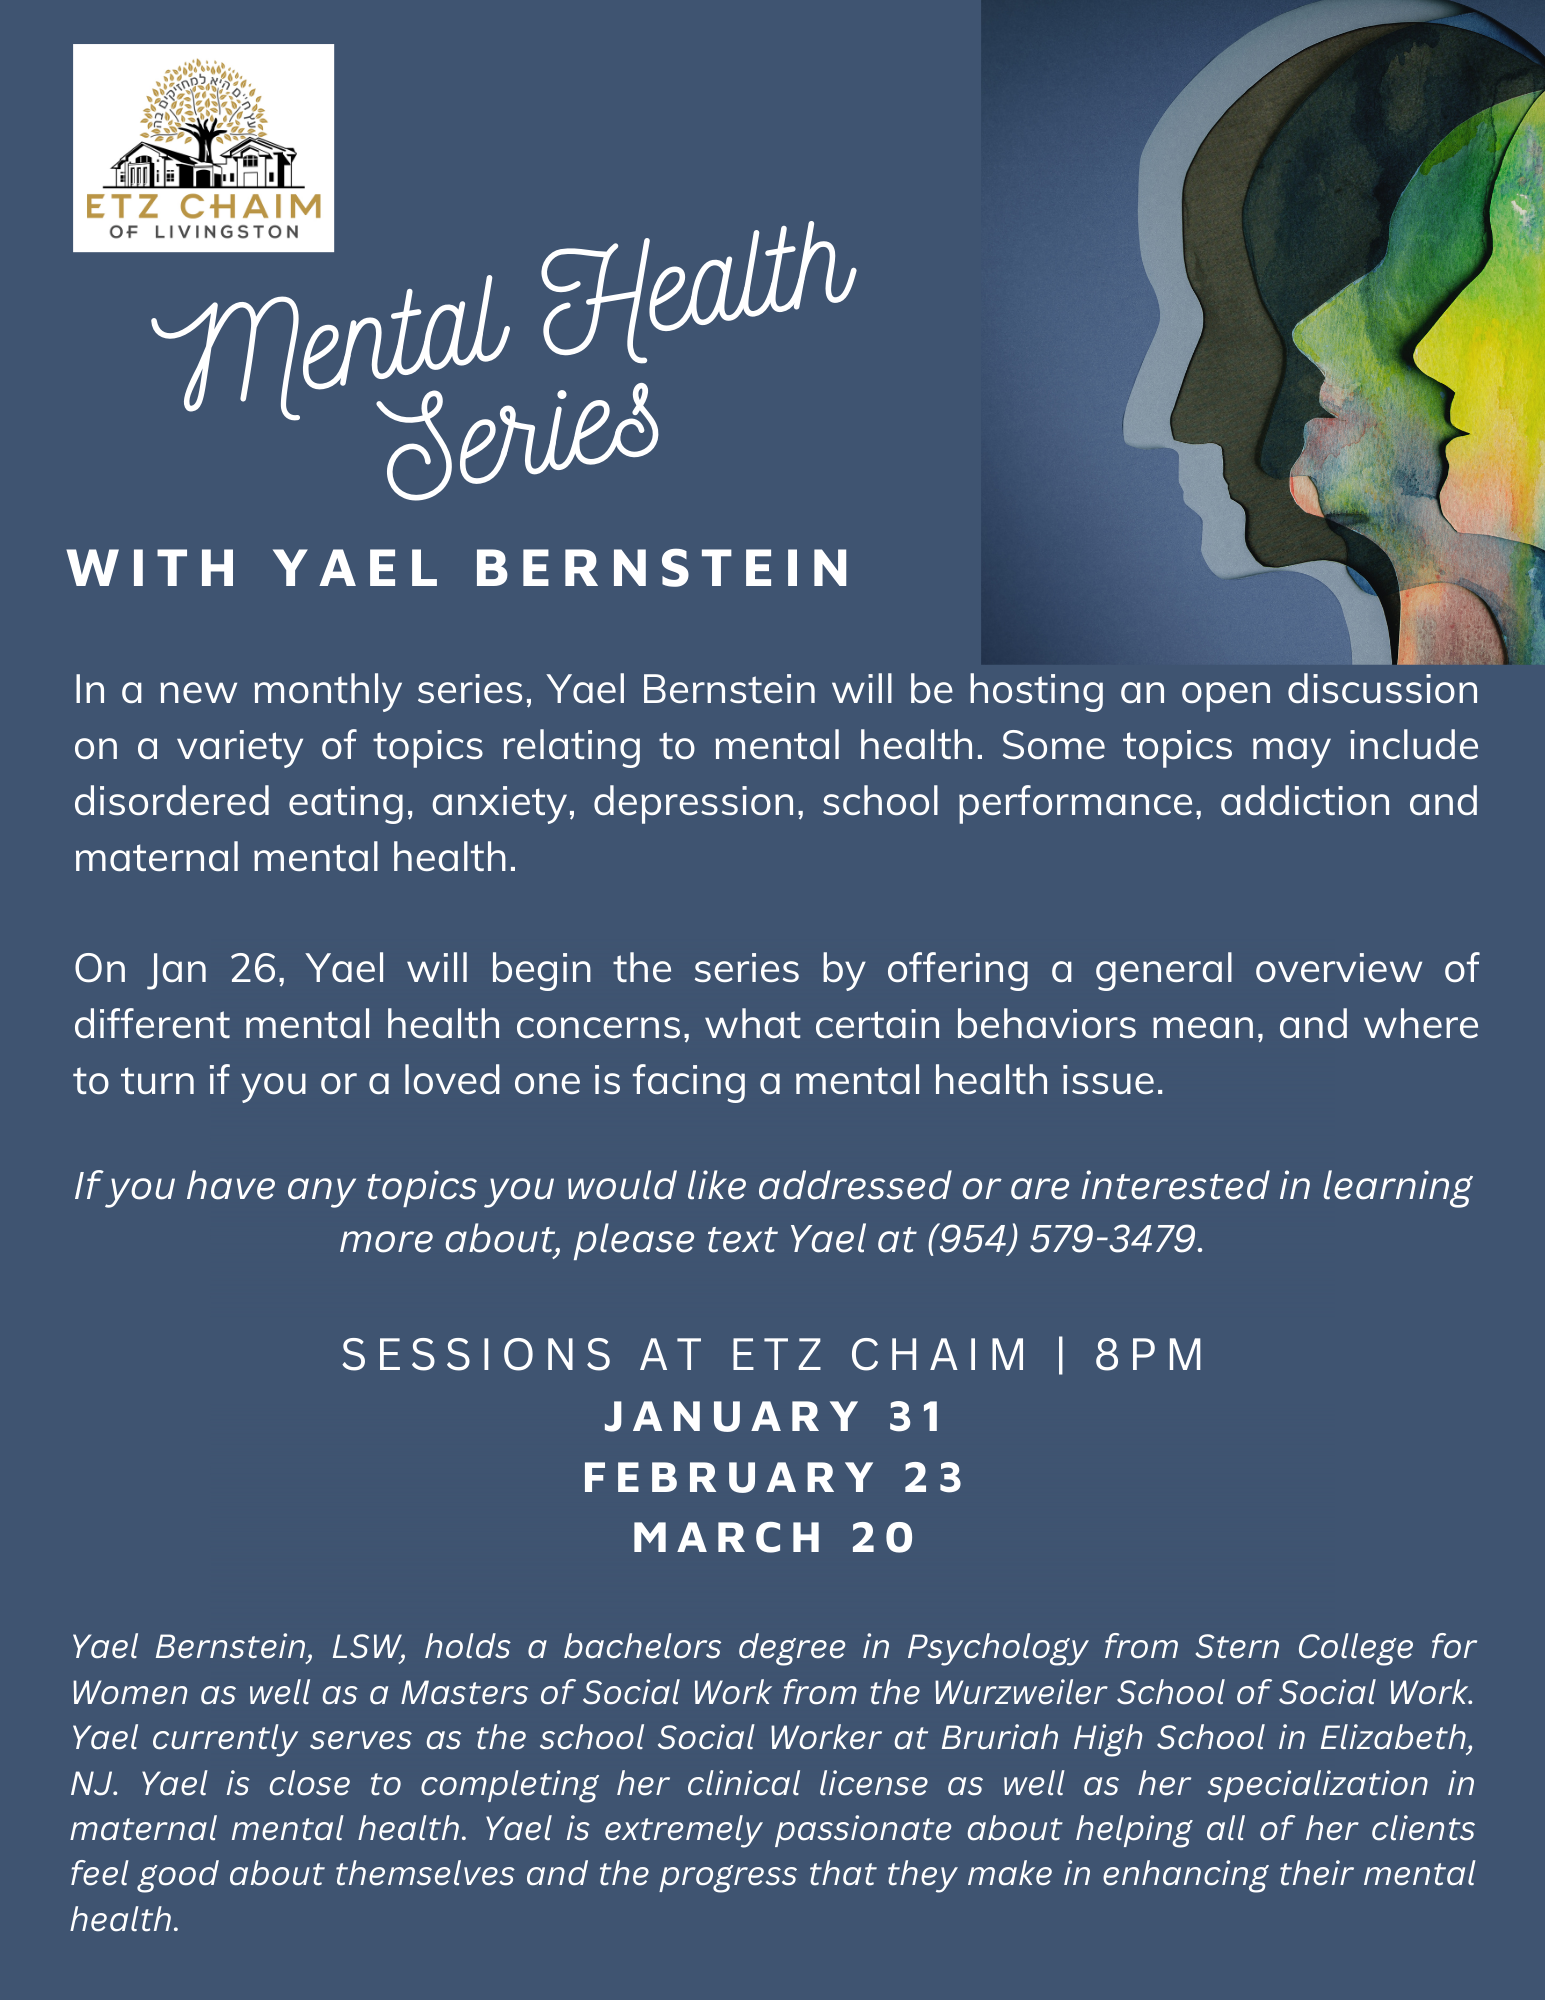 Mental Health Series with Yael Bernstein